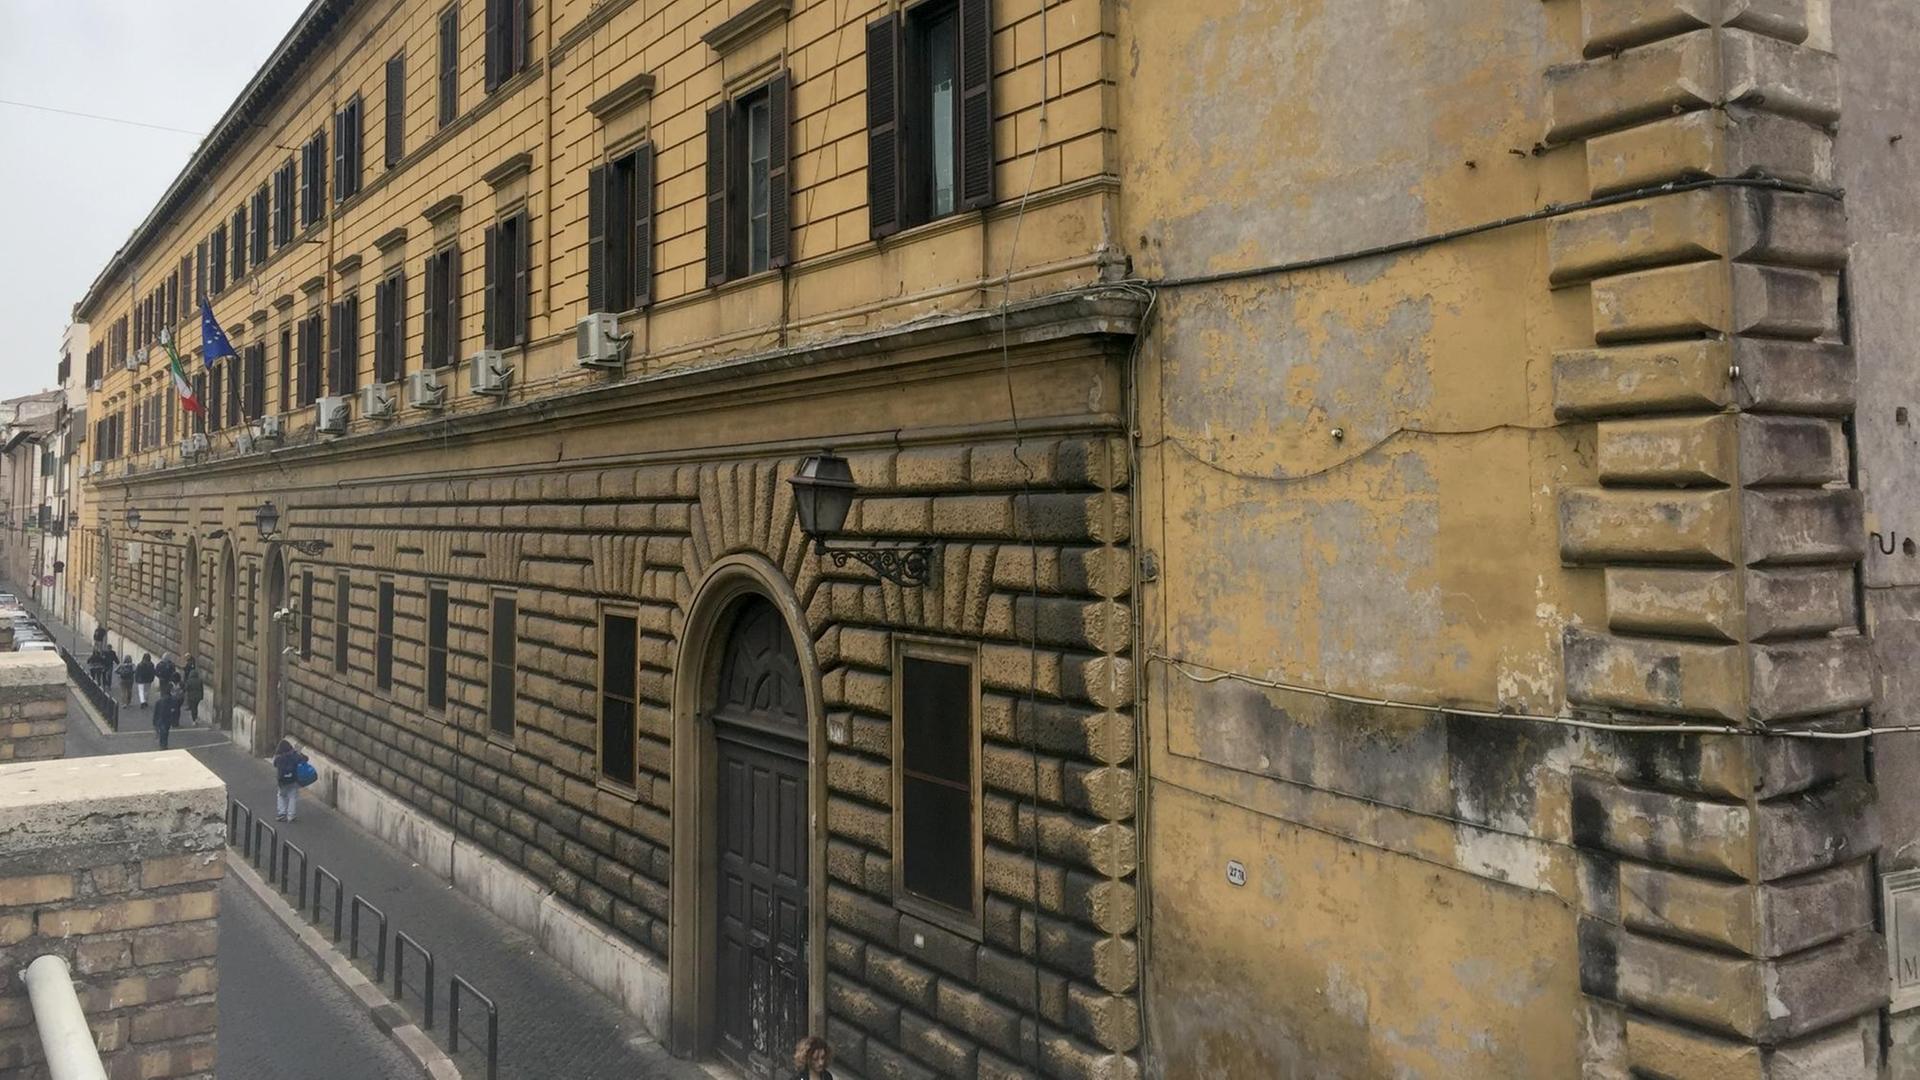 Das Gefängnis Regina Coeli in Rom (Italien), aufgenommen am 27.03.2017.